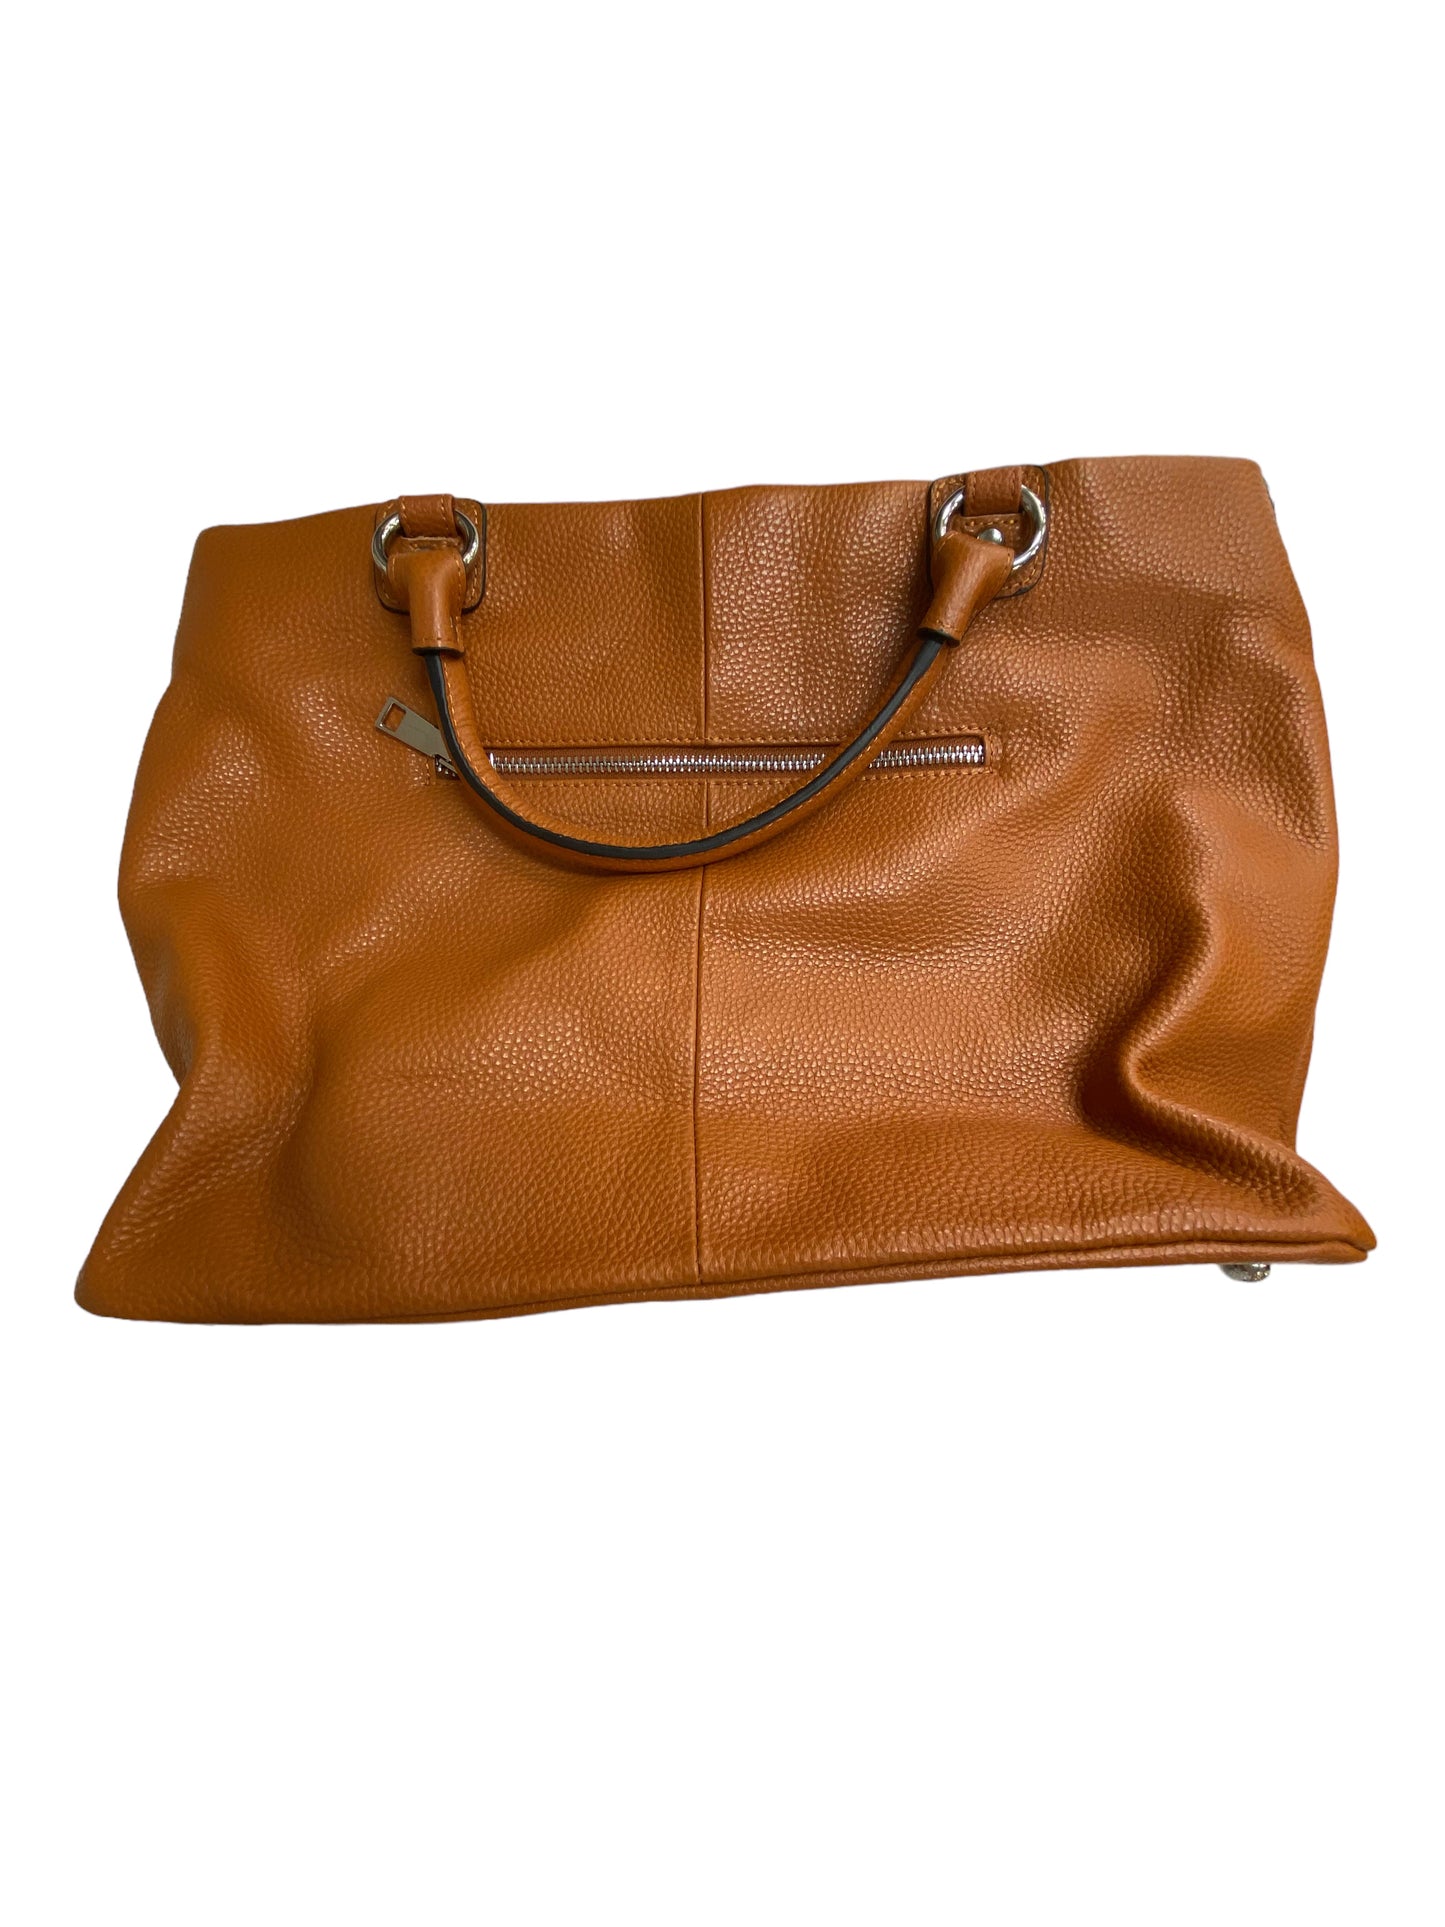 Handbag Leather KATTEE, Size Medium